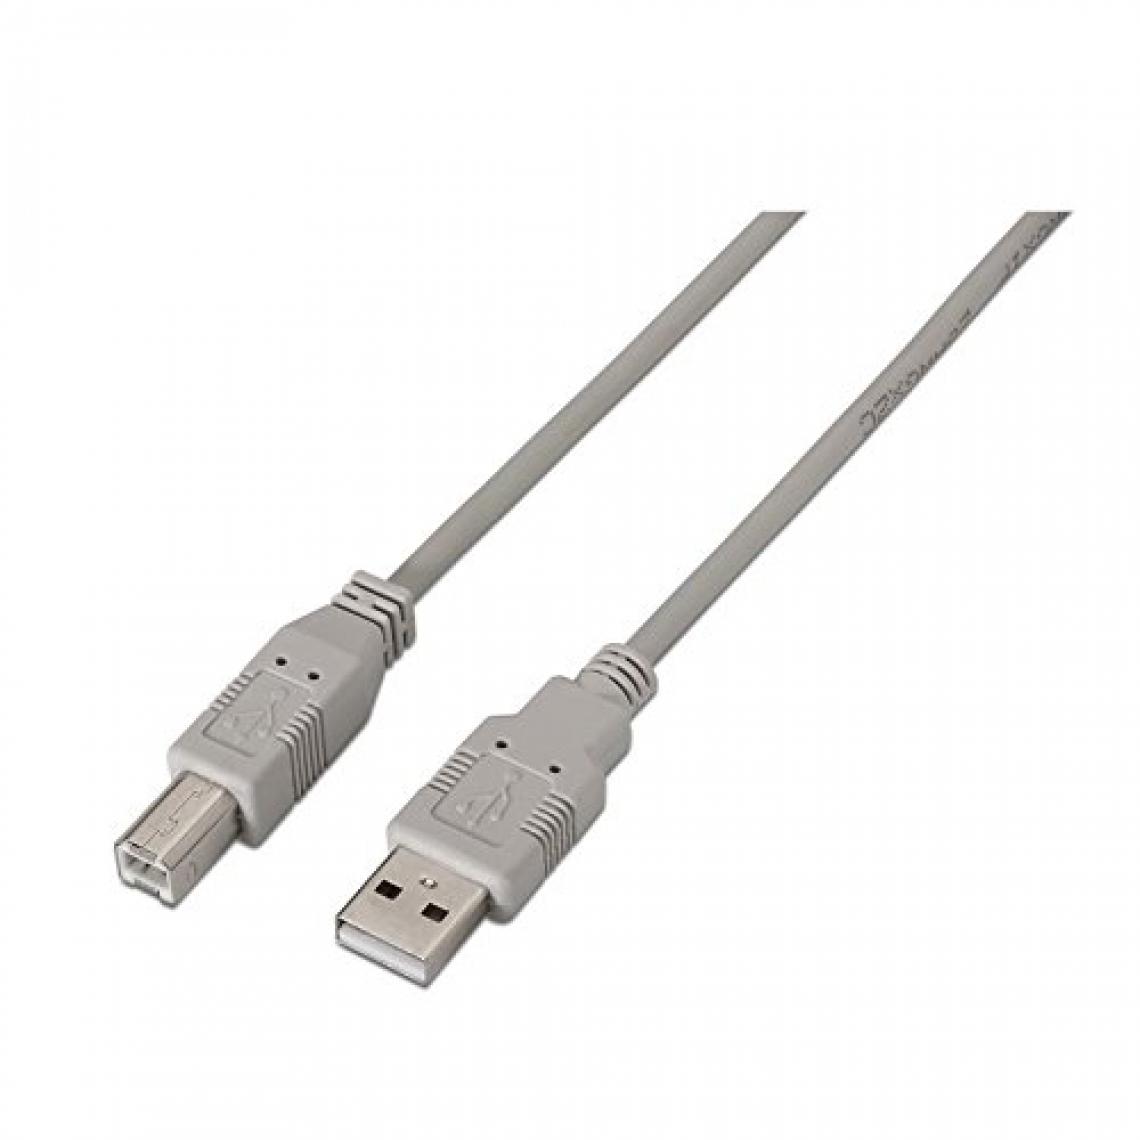 Ineck - INECK - Cordon de racordement imprimante USB A male vers USB B male 3M - Câble antenne